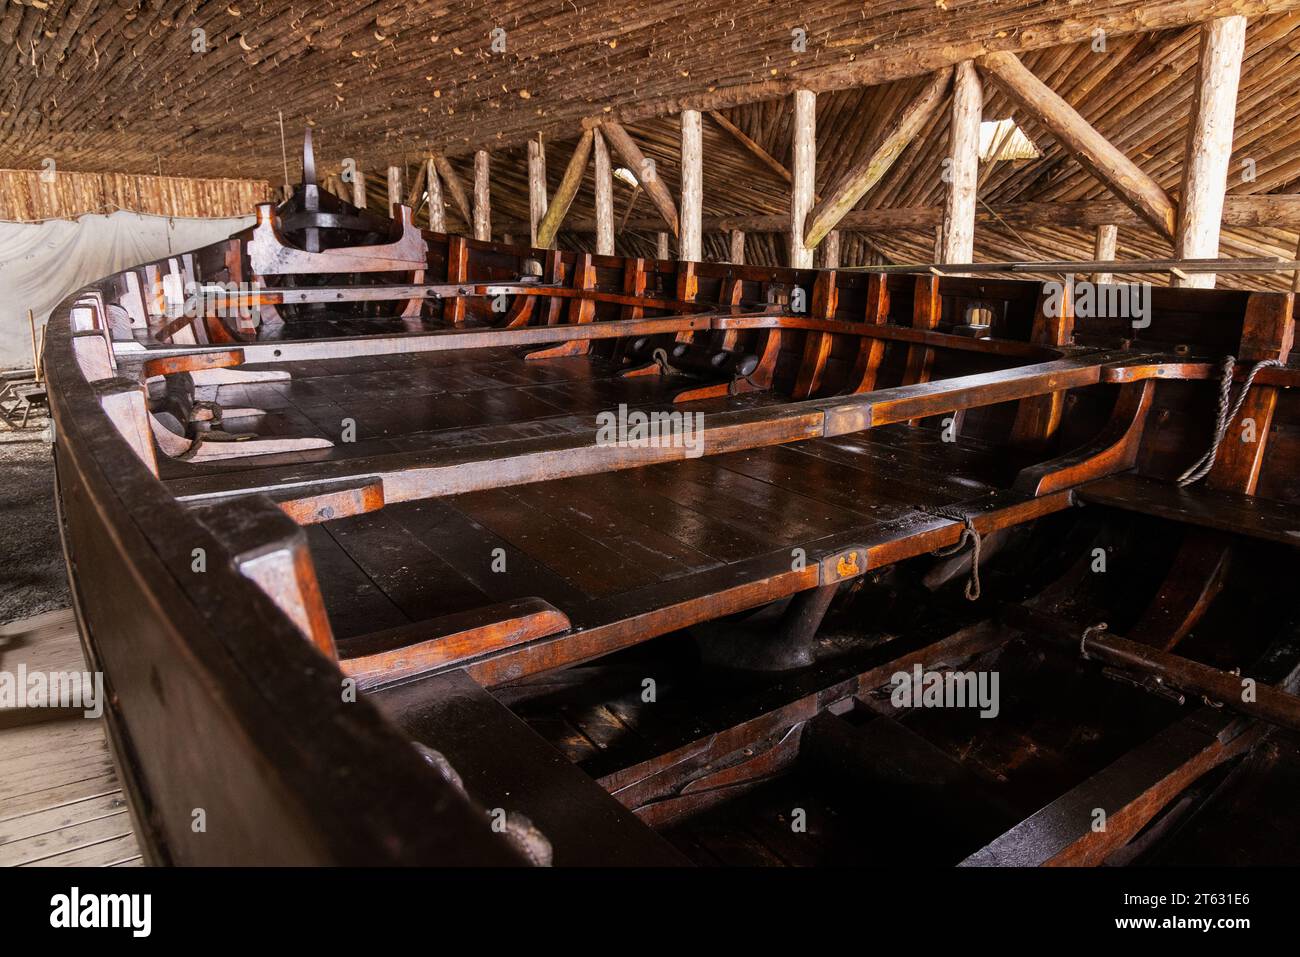 Rekonstruiertes Wikinger-Langboot oder Wikingerschiff im Museum, L'anse aux Meadows Norse archäologische Stätte und UNESCO-Stätte Neufundland Kanada Stockfoto